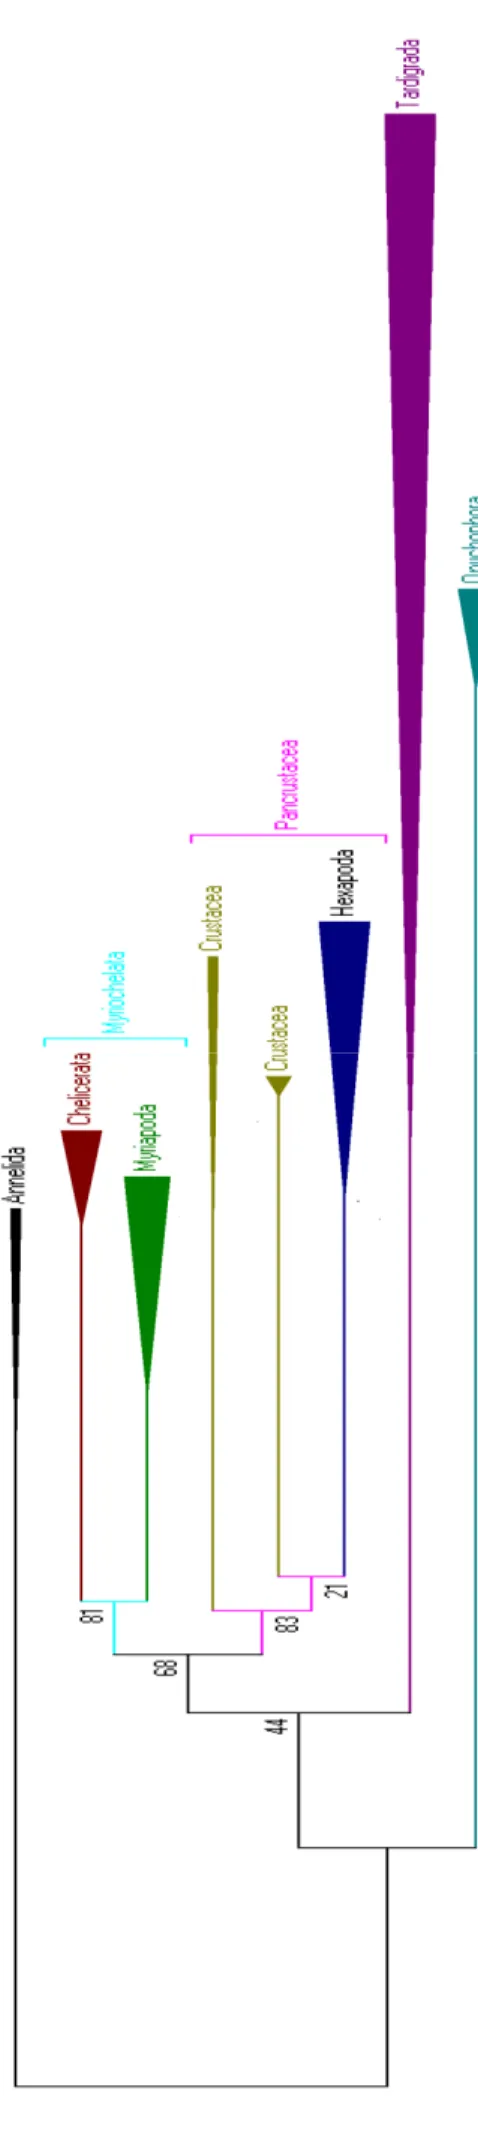 Figura  4:  Resultado  da  filogenia  do  Panarthropoda  com sequências do  gene 18s  utilizando  a  máxima  verossimilhança  (árvore  compactada)